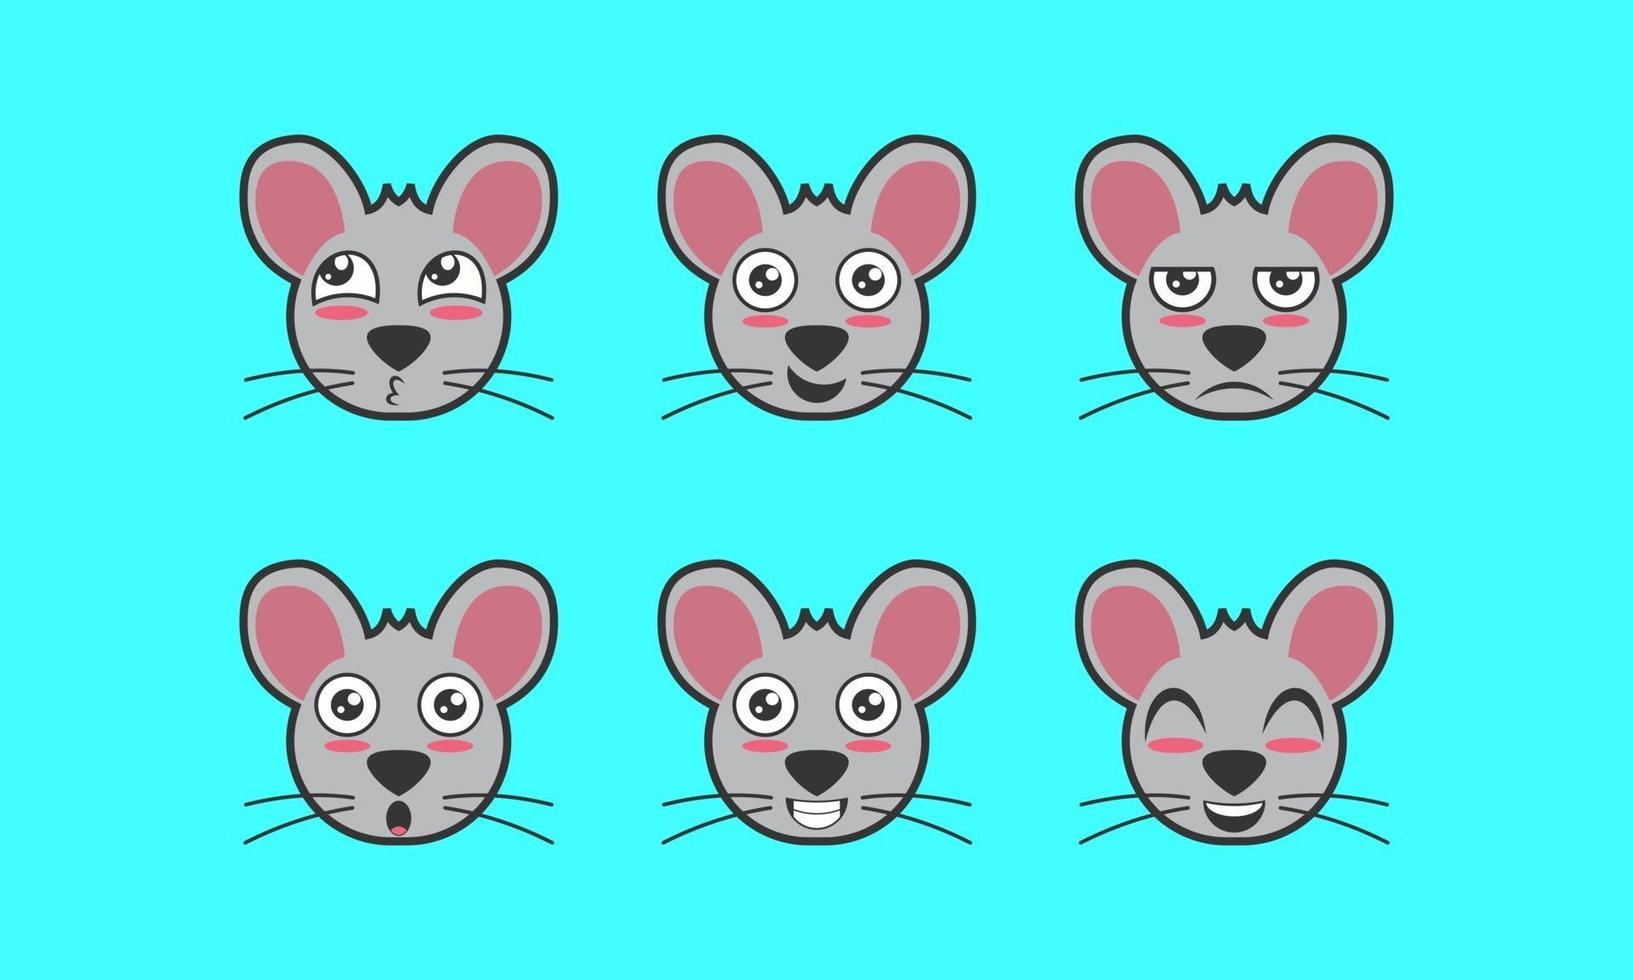 vetor de um ícone de expressão facial de um animal fofo de rato de estimação